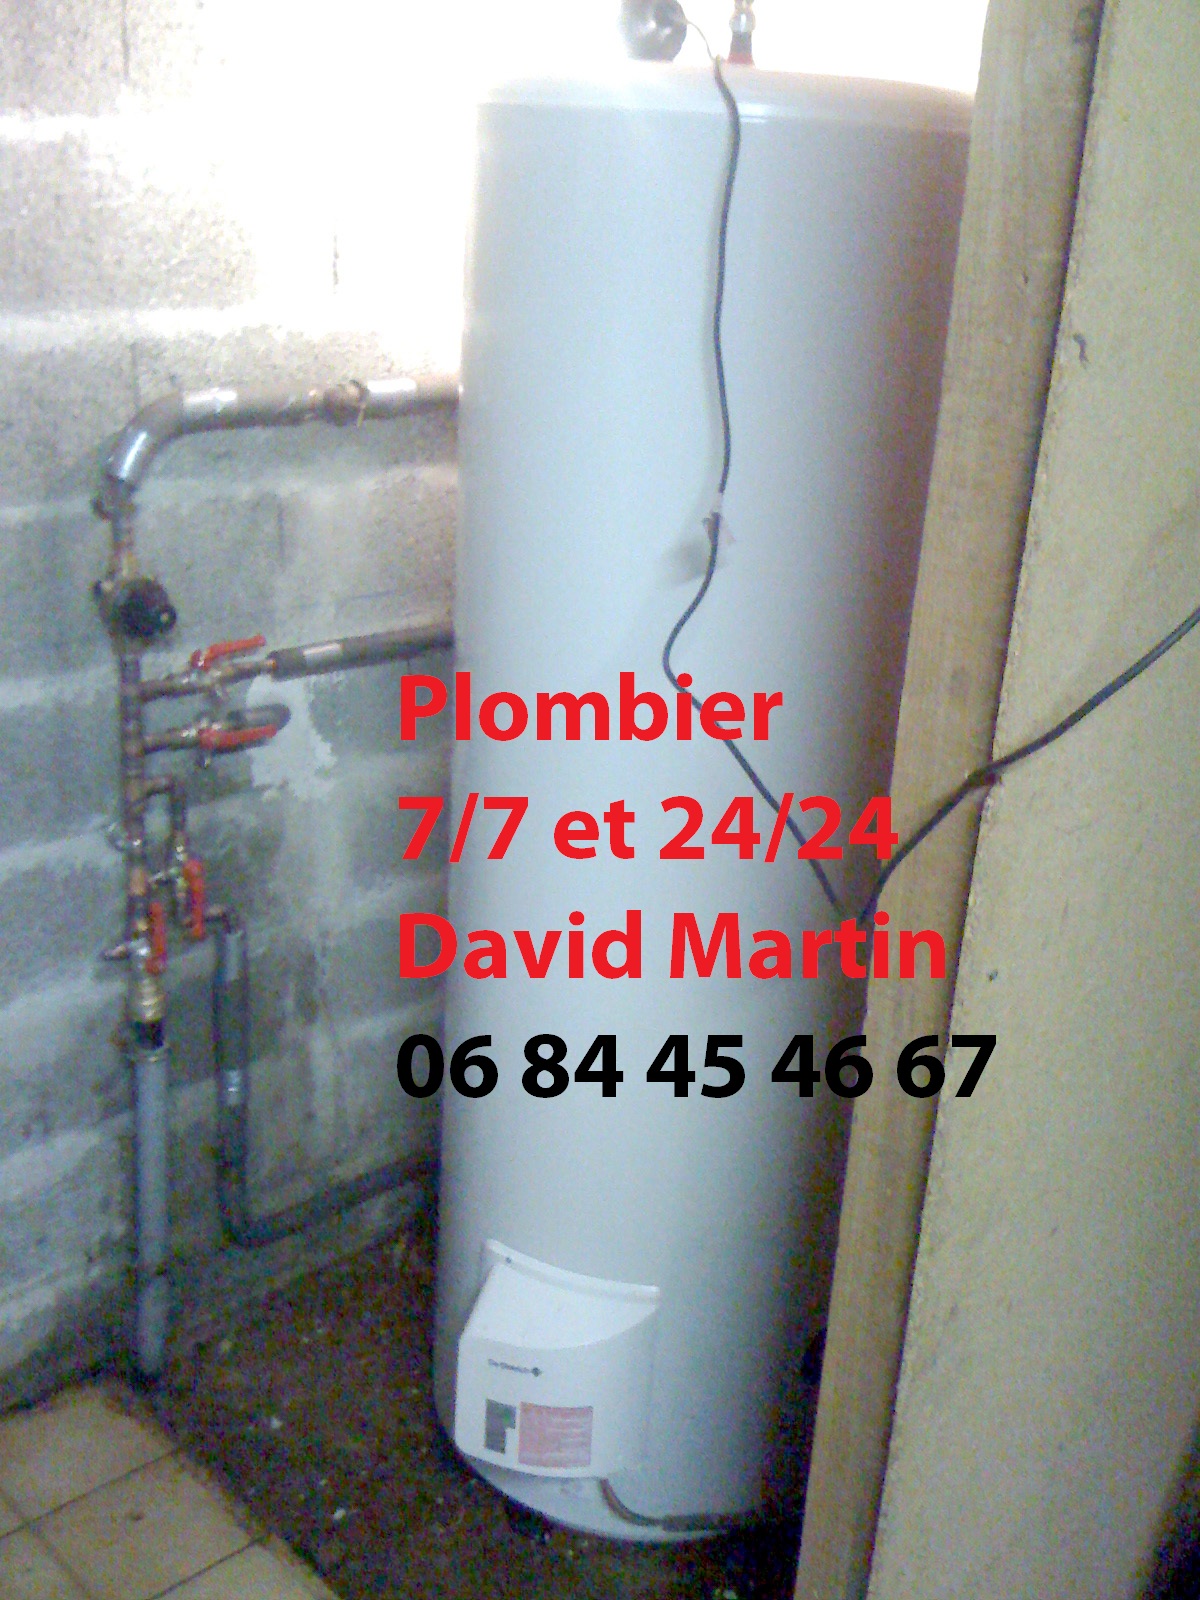 Chauffe-eau sur évier plomberie Charbonnières-les-Bains 06.84.45.46.67.jpg